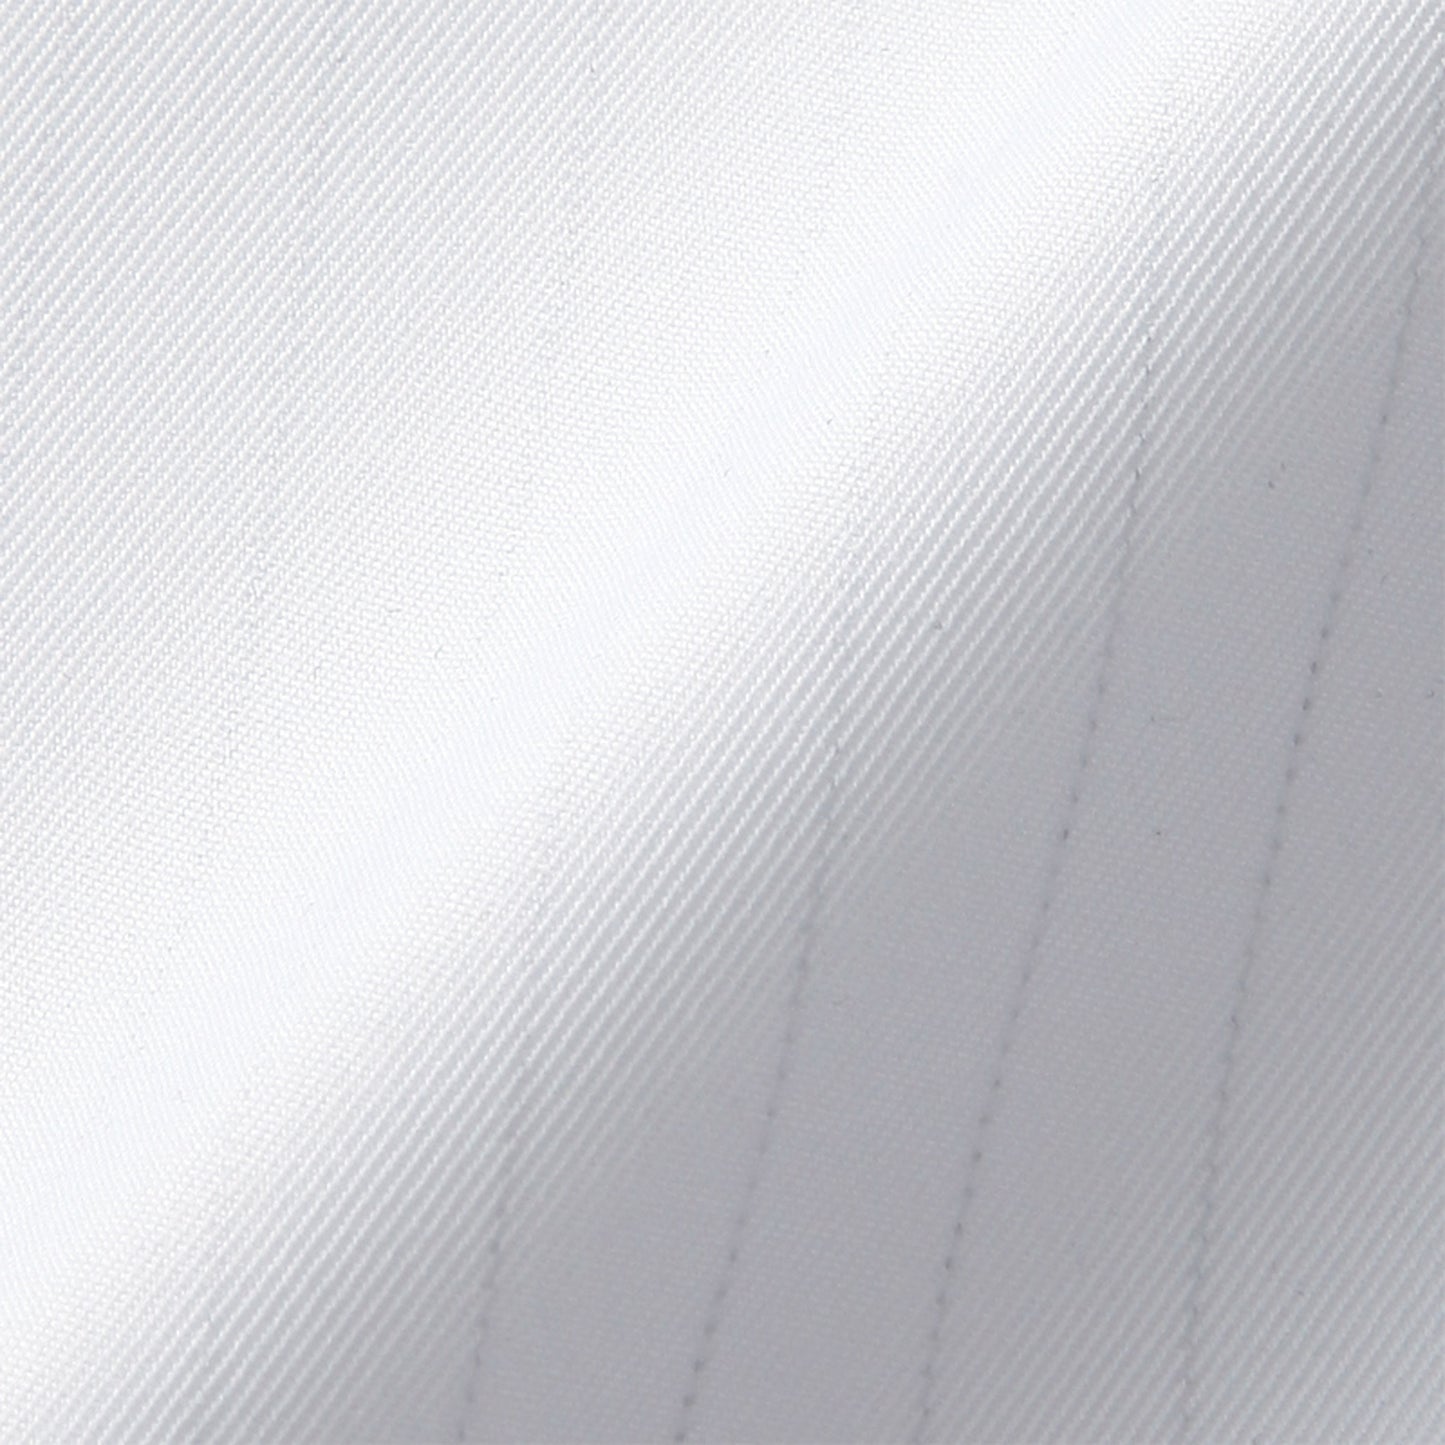 サンエス 食品工場用白衣 フードマイスター 動きやすいジャケットタイプ 【男女共用長袖ジャケット】 FX70941R